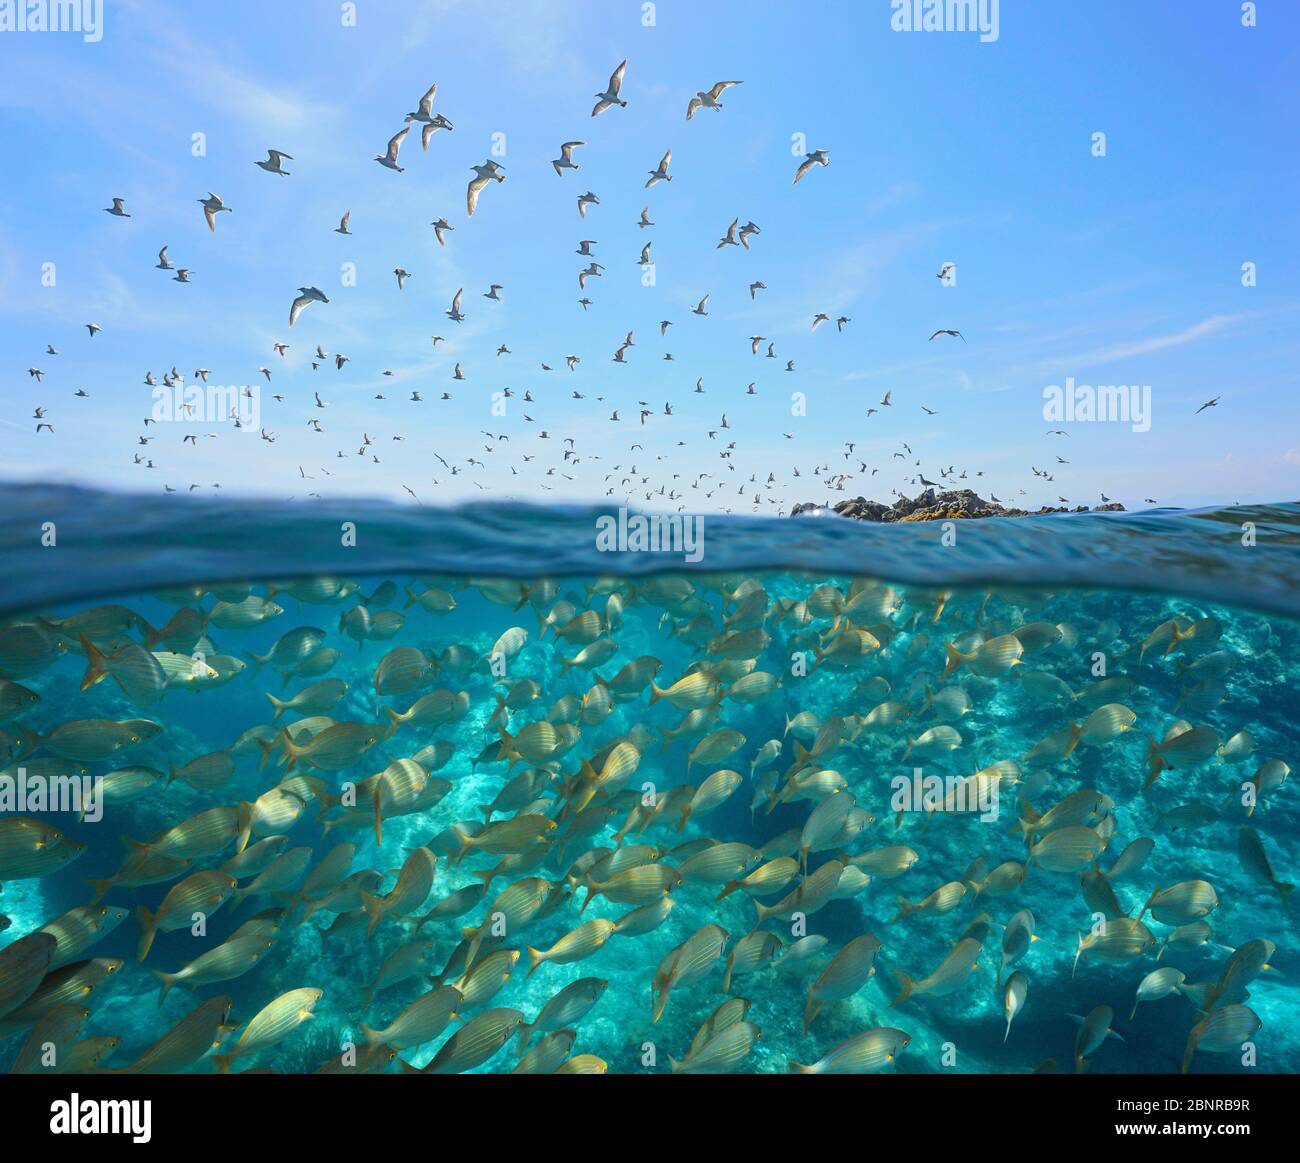 Colonie de goélands volant dans le ciel et une école de poissons sous l'eau, vue partagée sur et sous la surface de l'eau, mer Méditerranée, Espagne, Costa Brava Banque D'Images